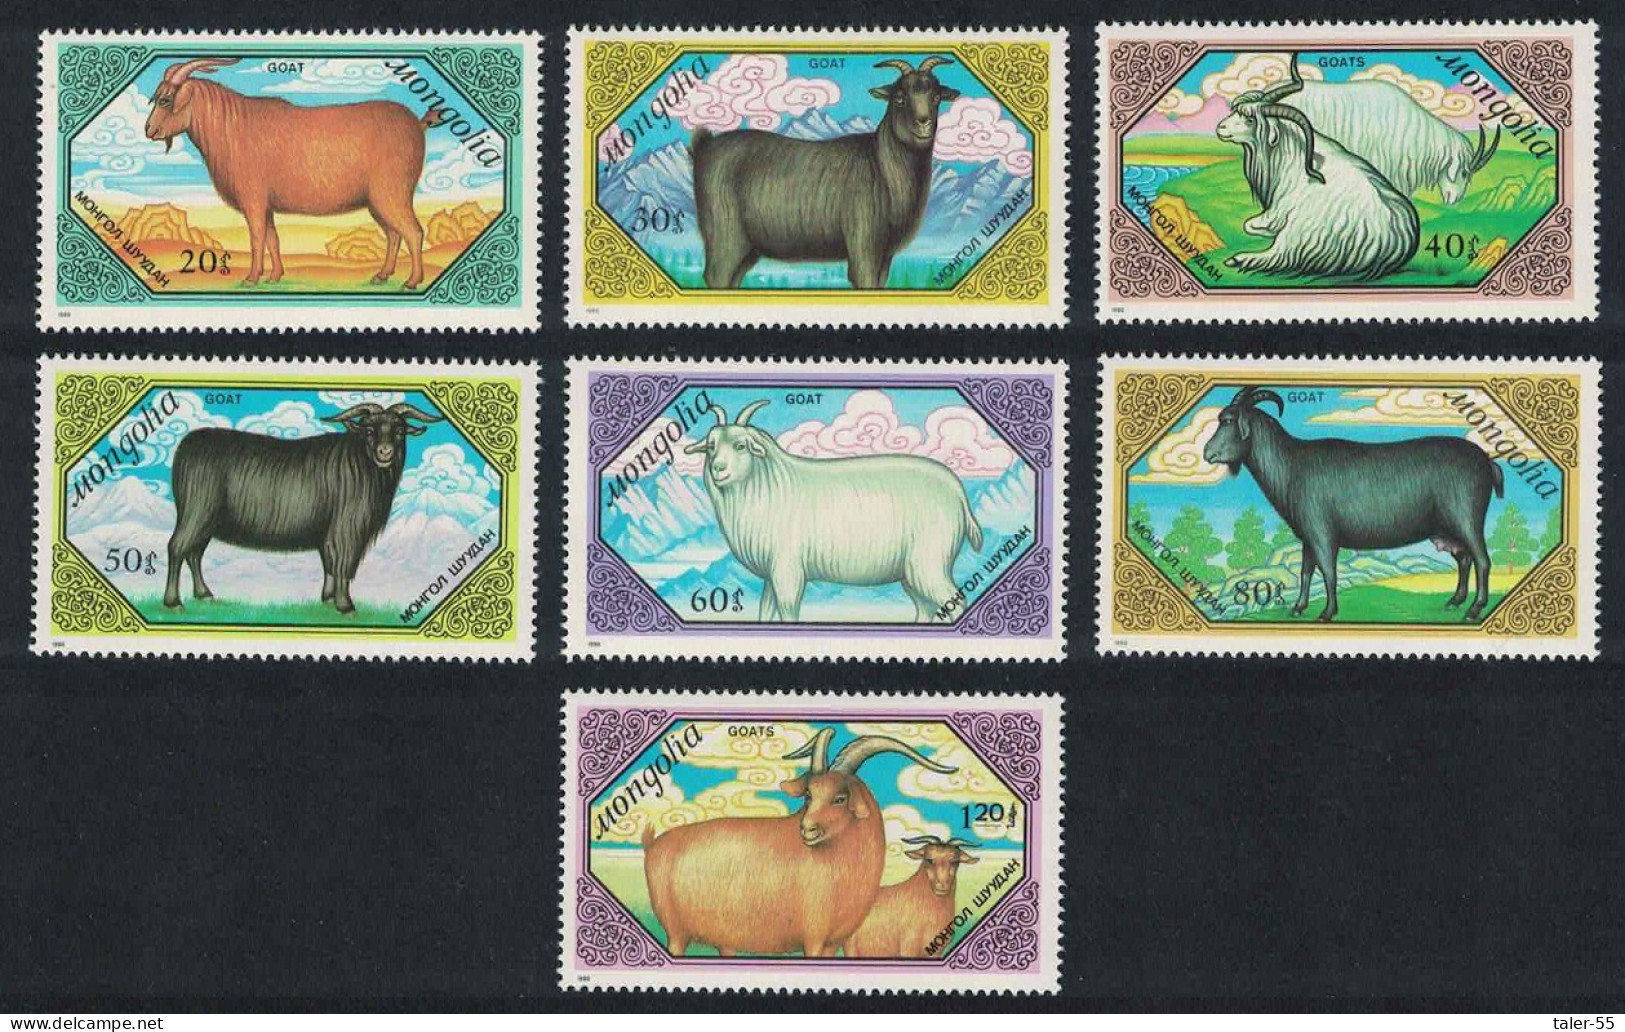 Mongolia Goats 7v 1988 MNH SG#1984-1990 - Mongolia